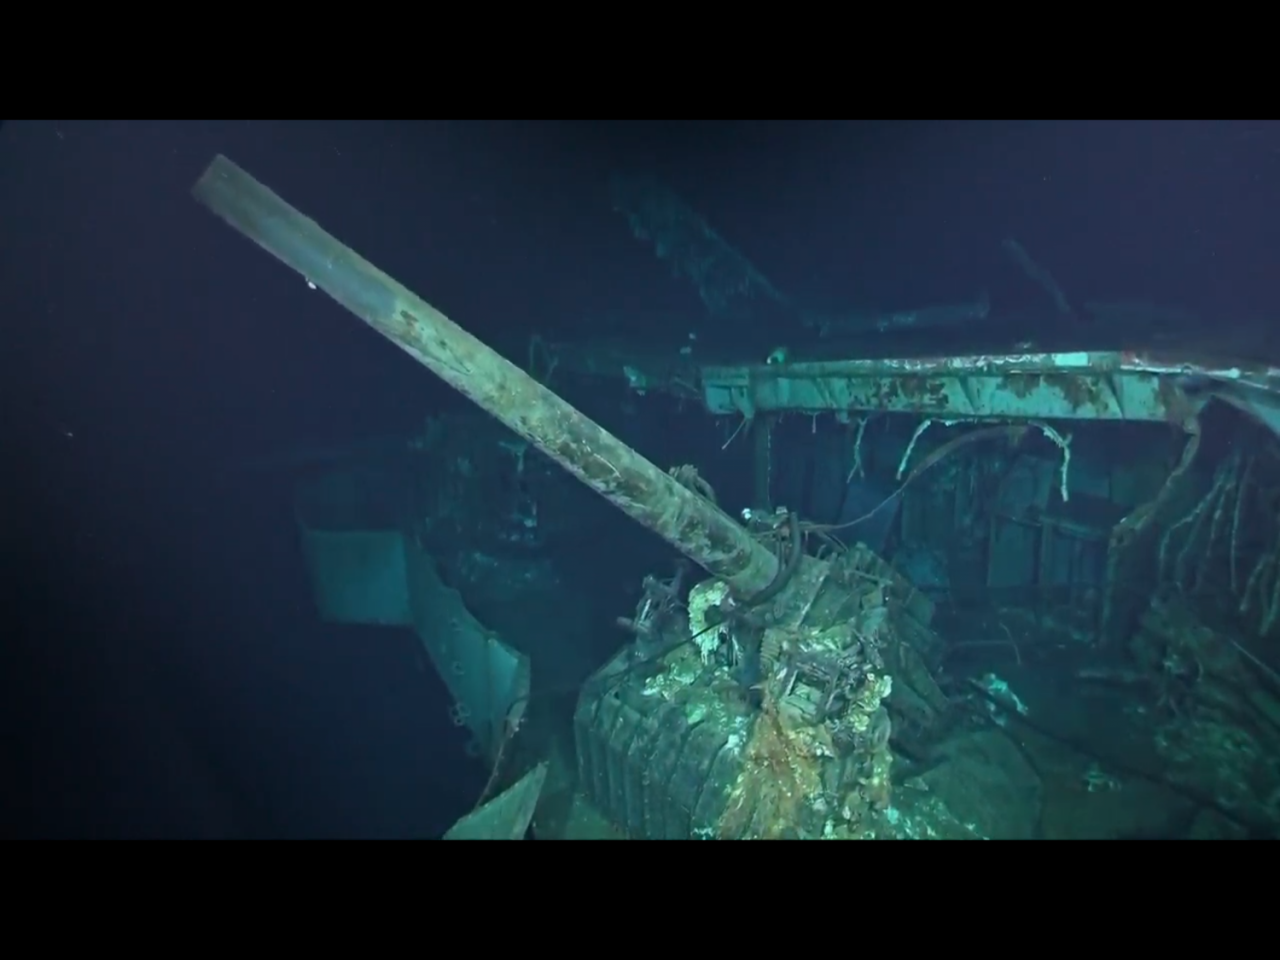 美傳奇航母大黃蜂號 殘骸南太平洋深海尋獲